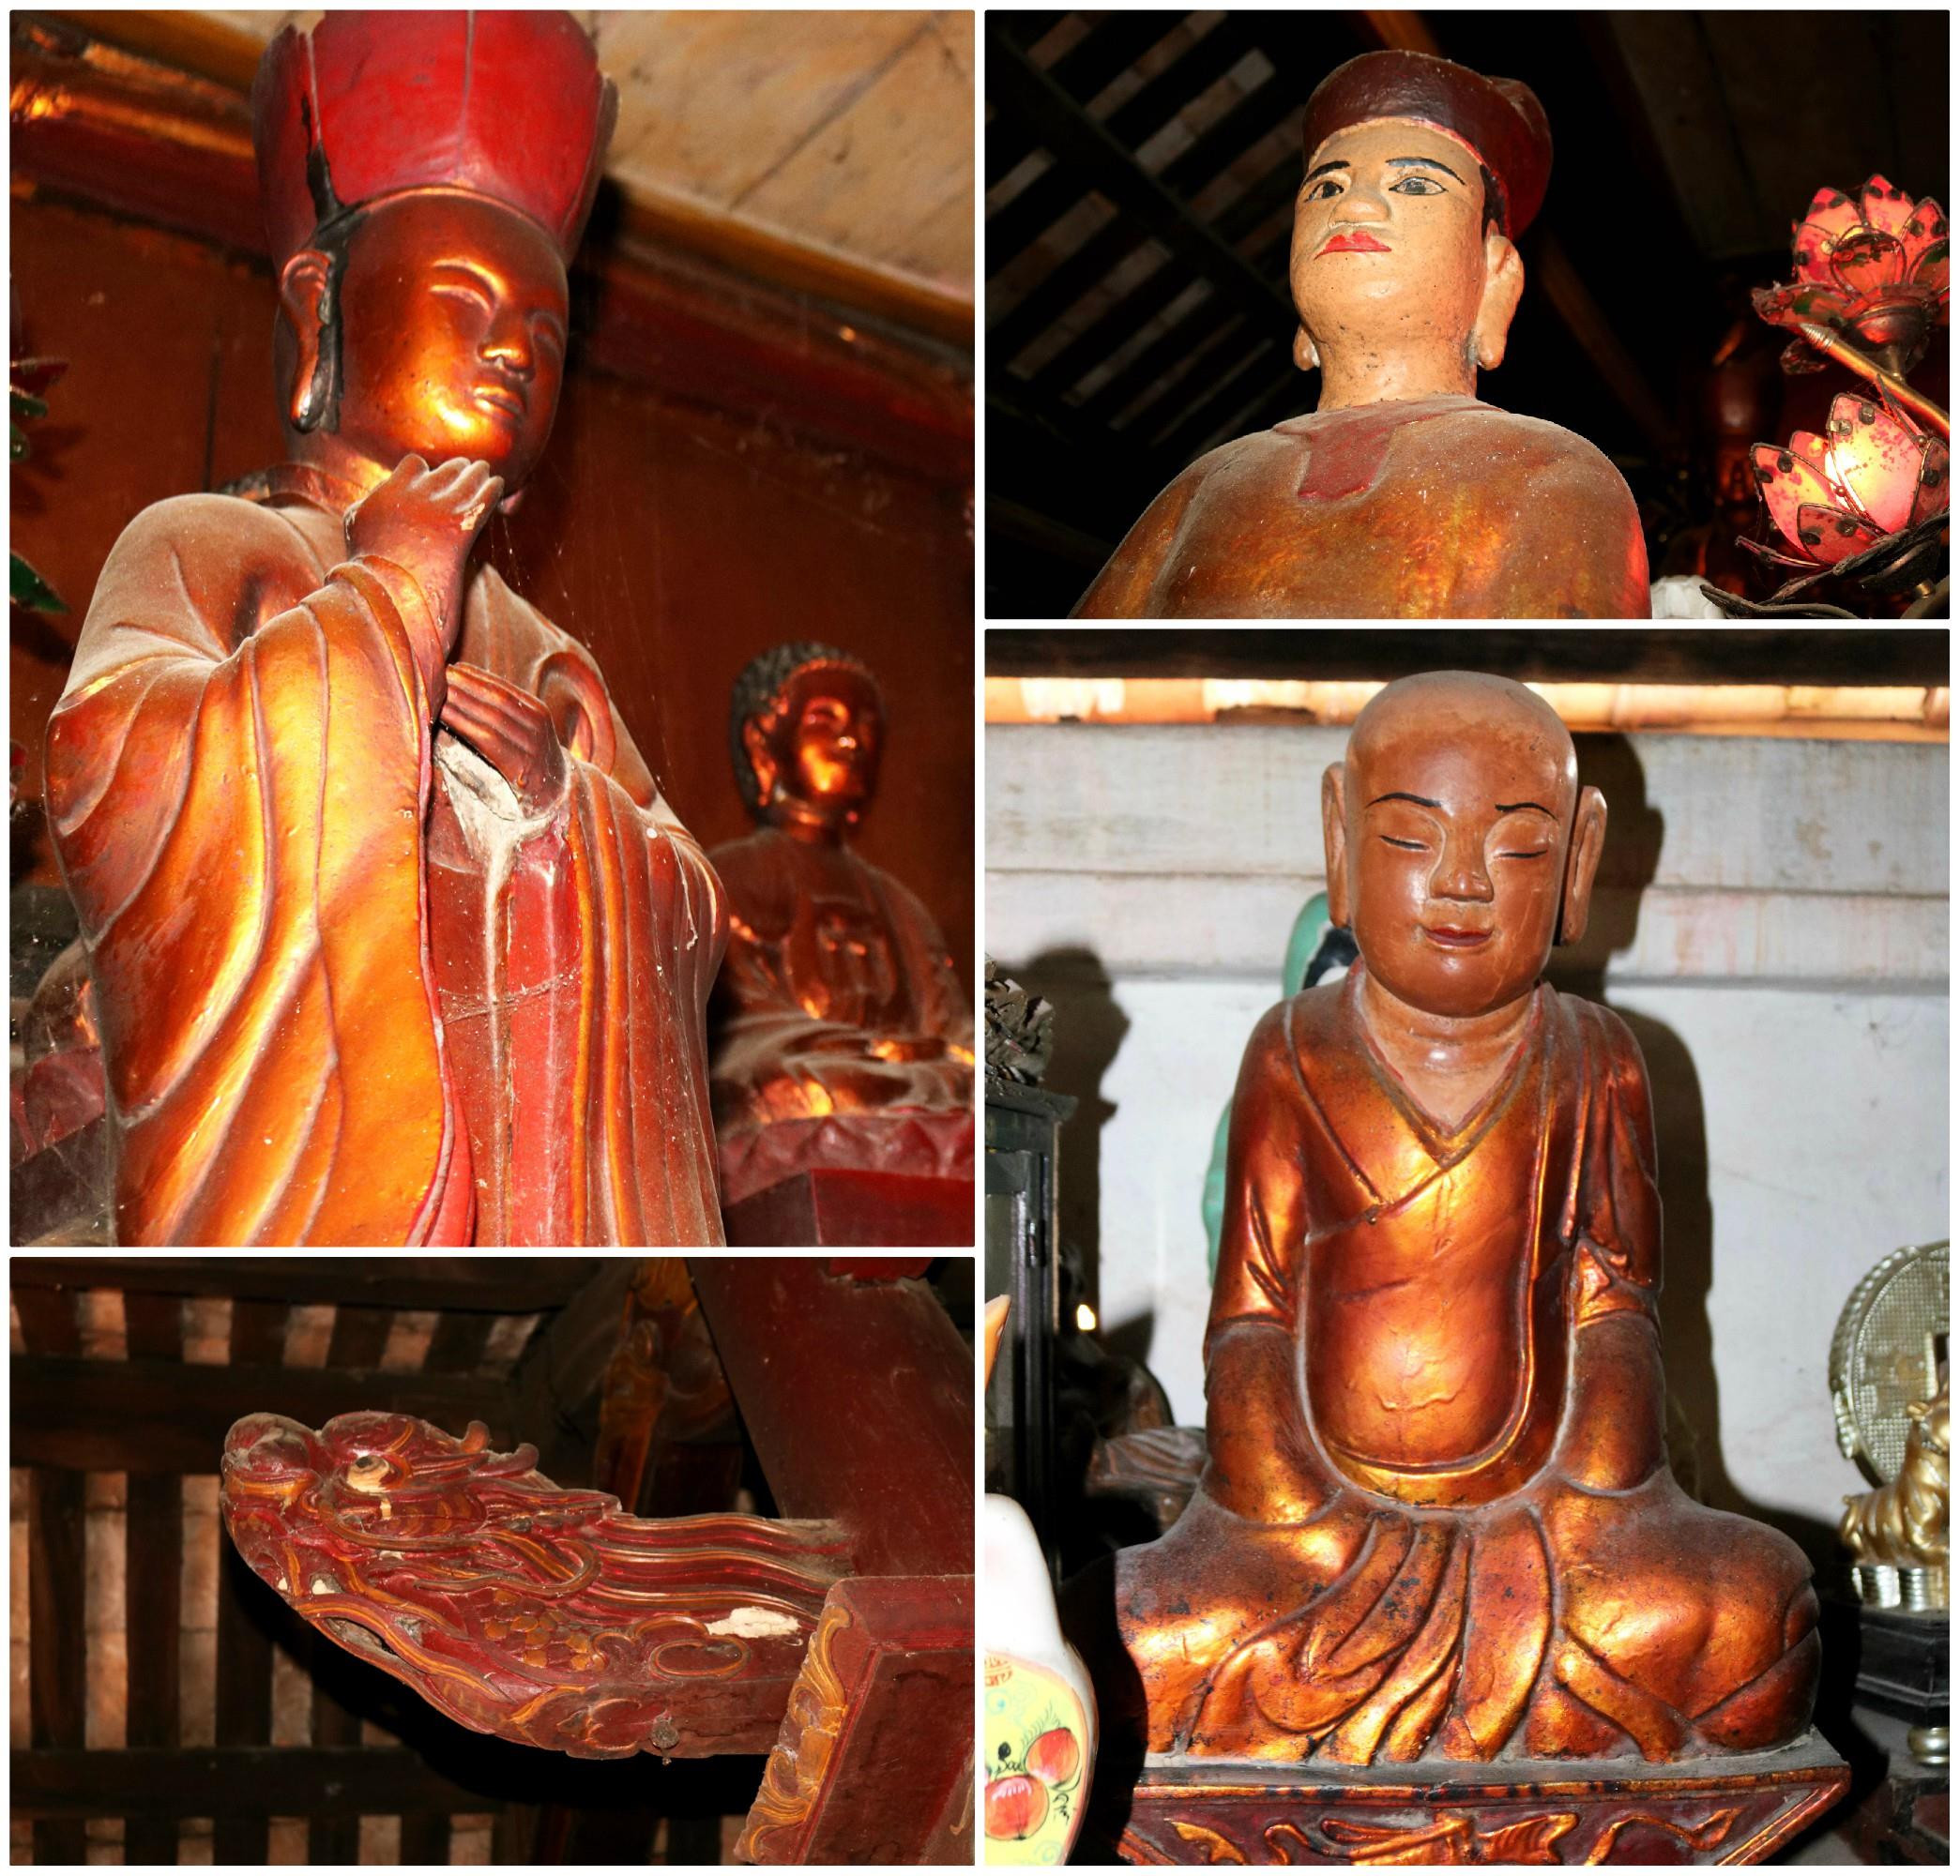 Với lịch sử lâu đời và còn lưu giữ được một hệ thống tượng pháp đặc sắc, chùa Bà Bụt được đánh giá là một trong những ngôi chùa cổ kính nổi tiếng, điểm đến chiêm bái, tham quan hấp dẫn ở xứ Nghệ.